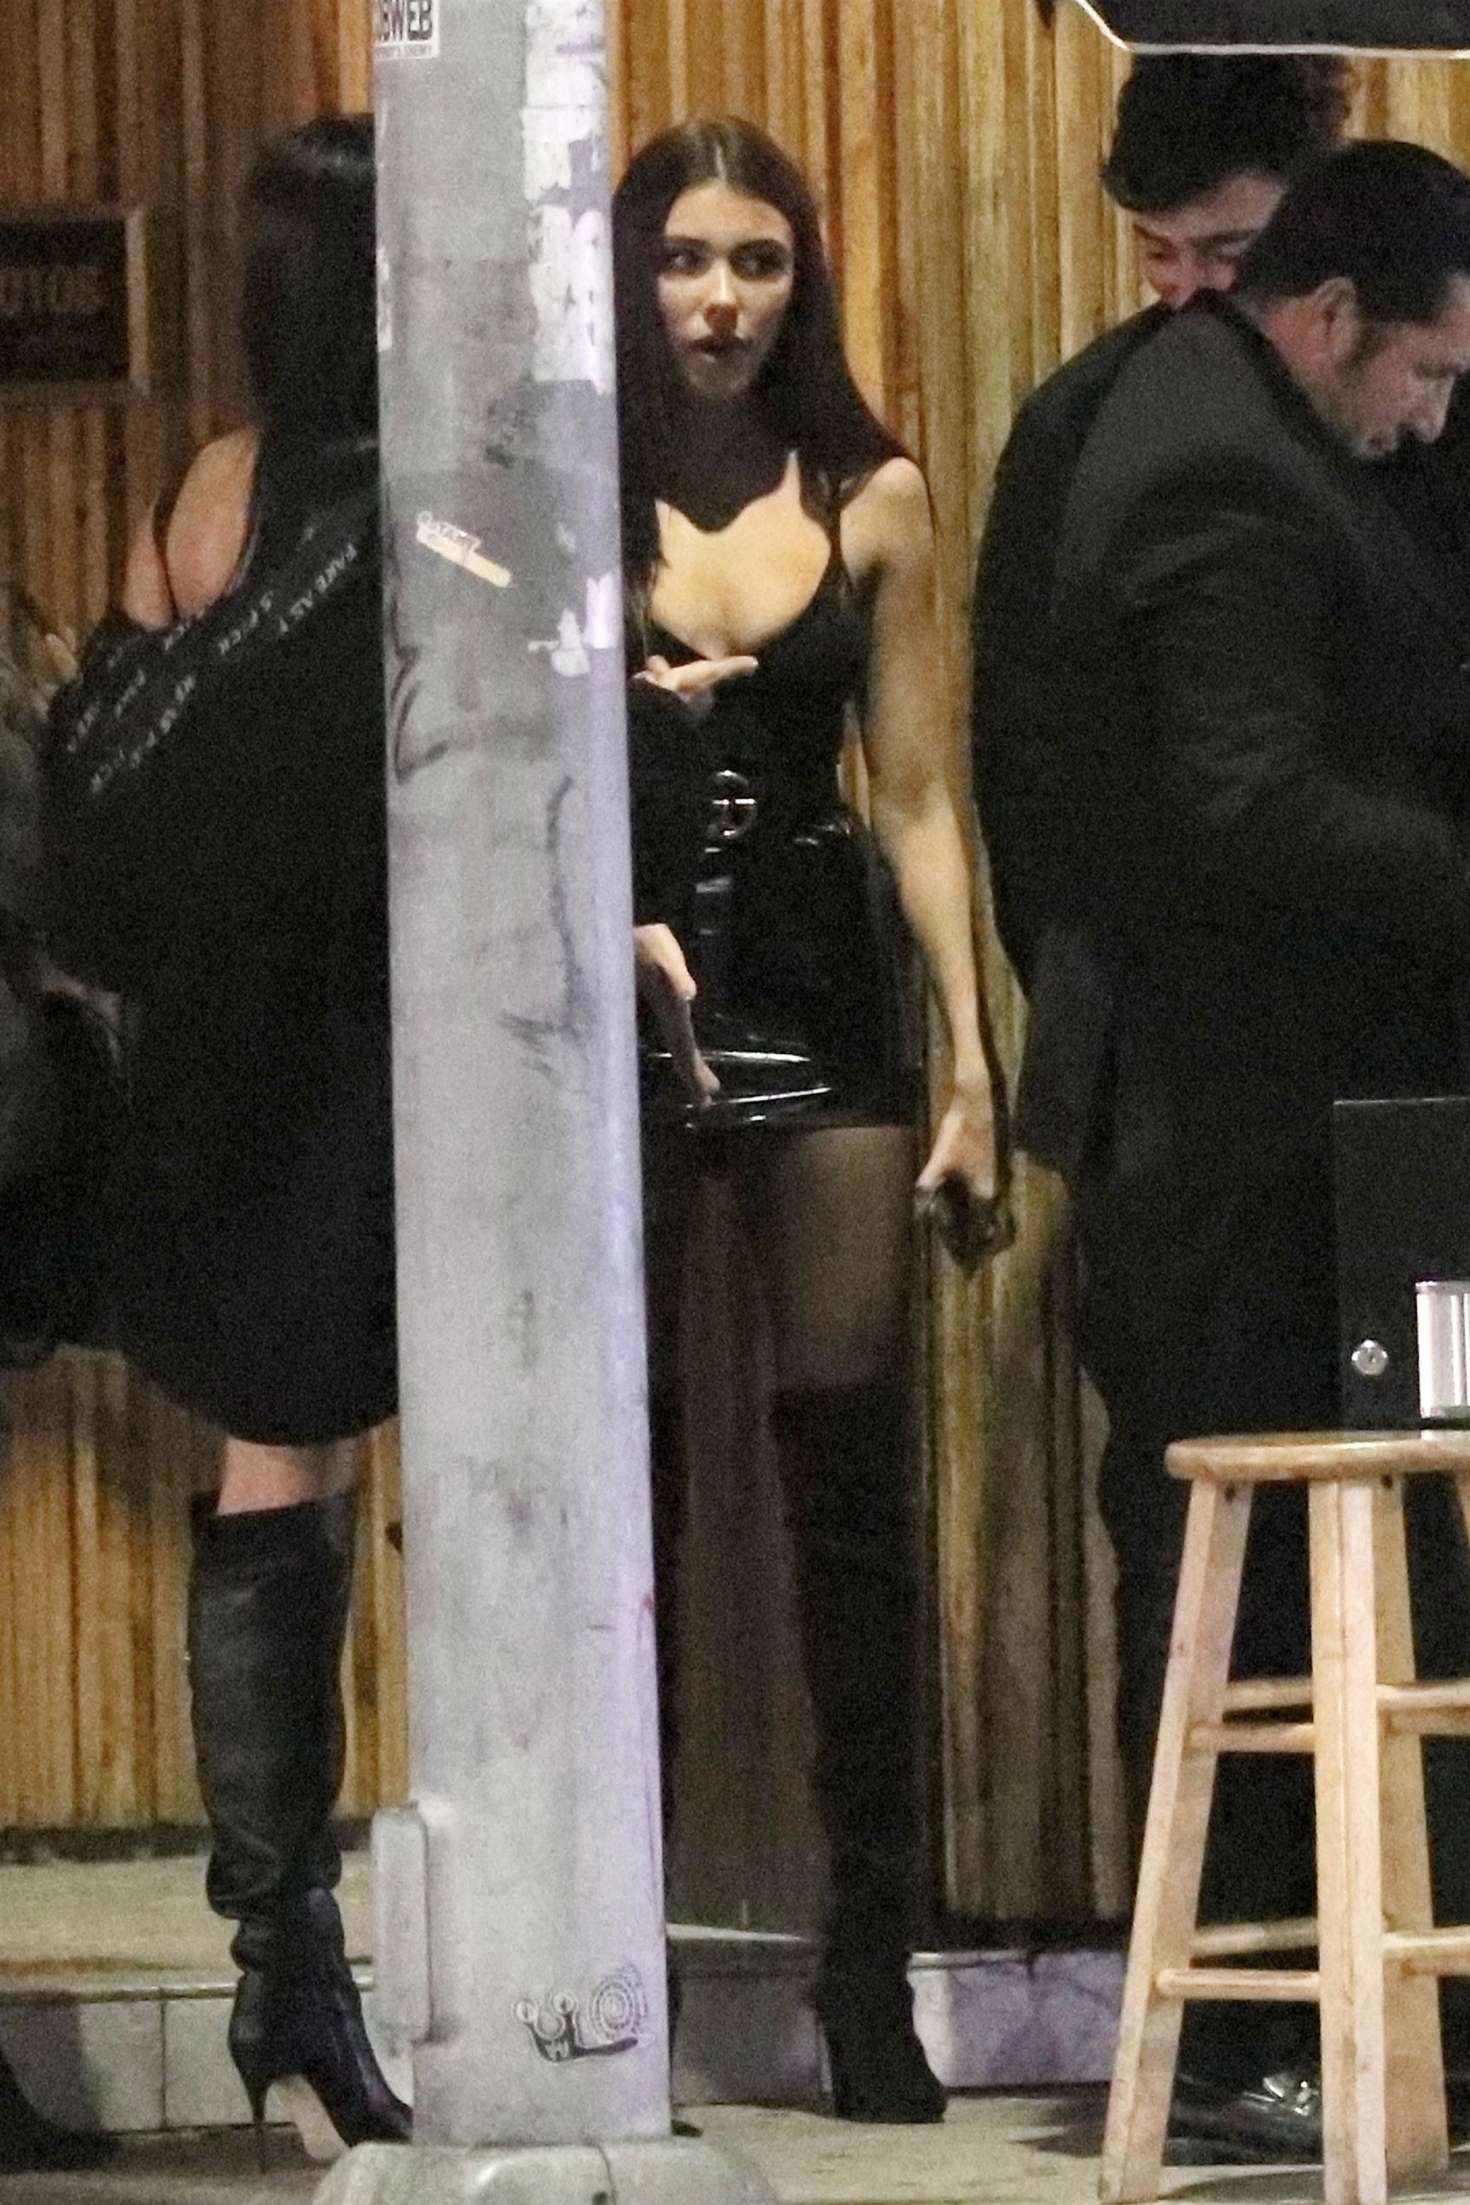 Madison Beerin Mini Dress at a nightclub in LA